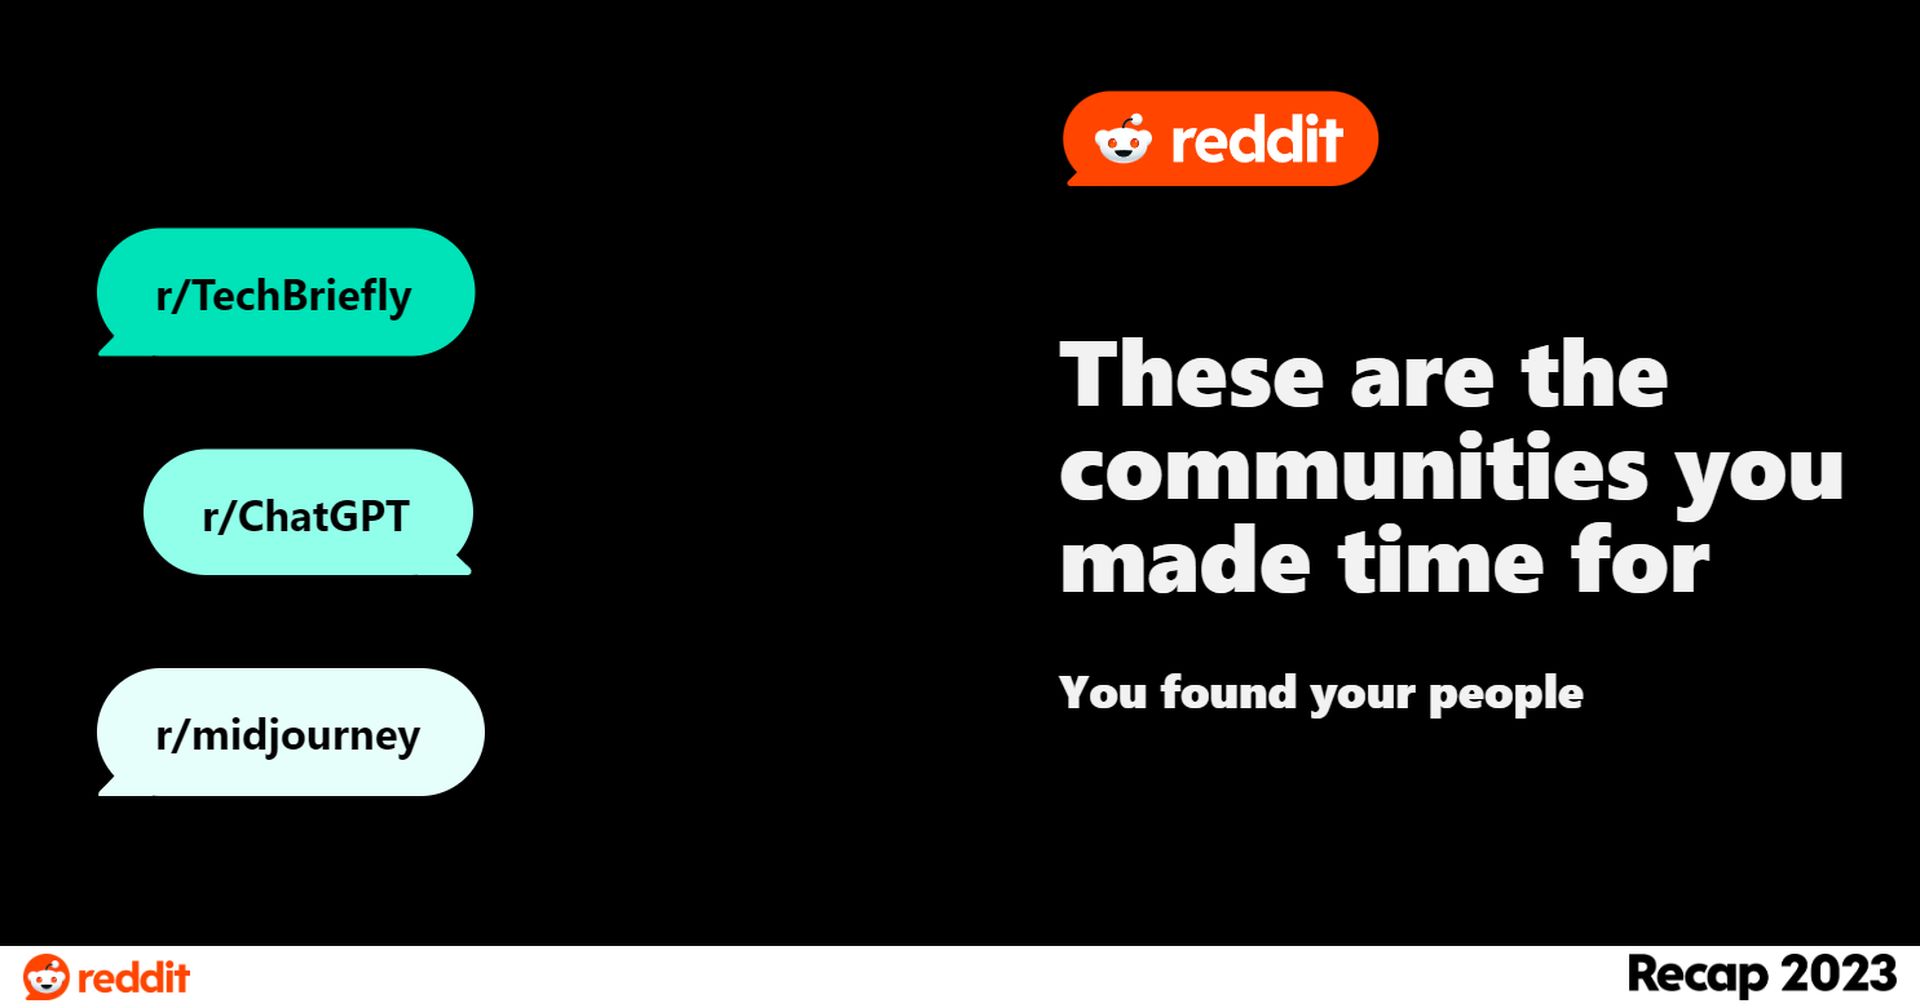 איך להשיג את Reddit Recap 2023 בארבעה שלבים פשוטים! חשפו תובנות ייחודיות, דגשים בקהילה ורגעים בלתי נשכחים. חקור עכשיו!